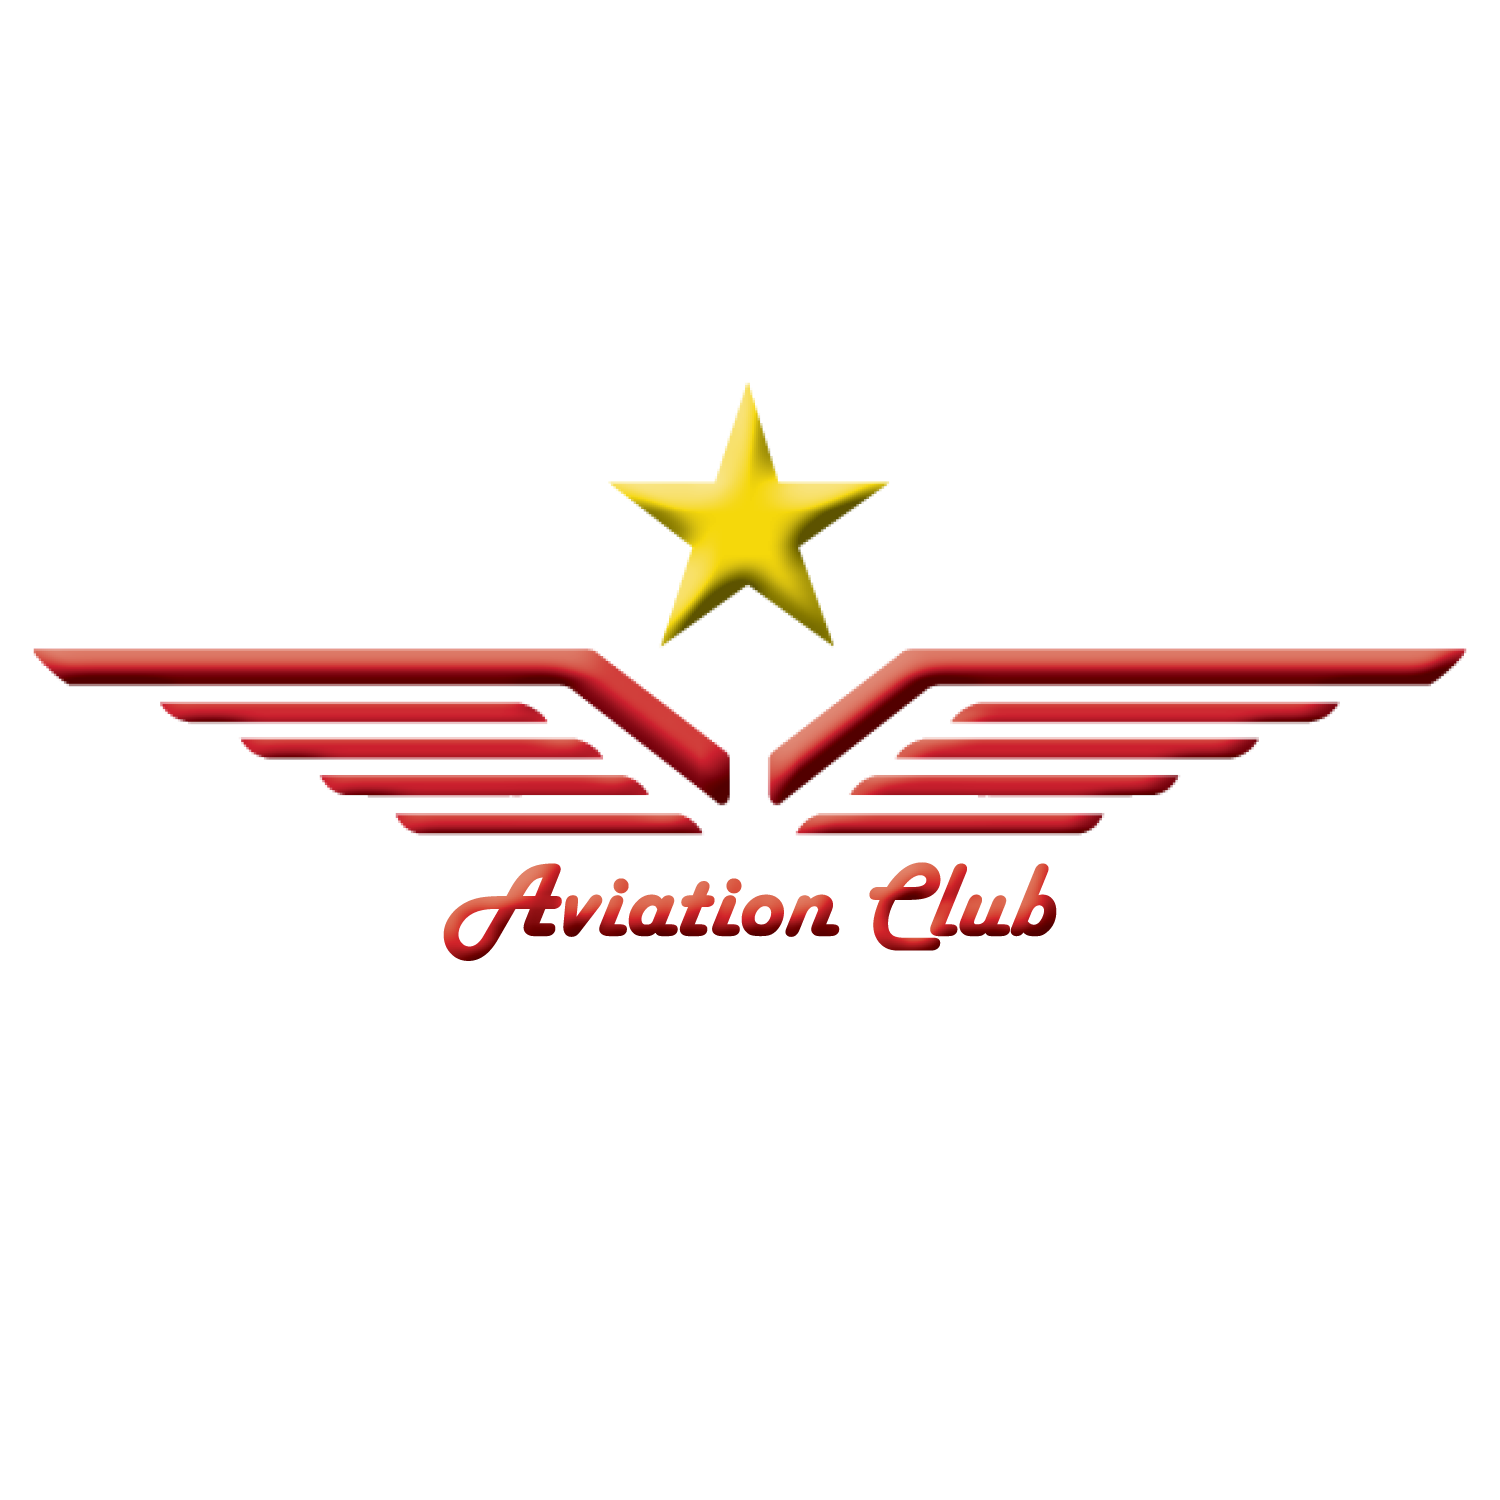 Aviation Club